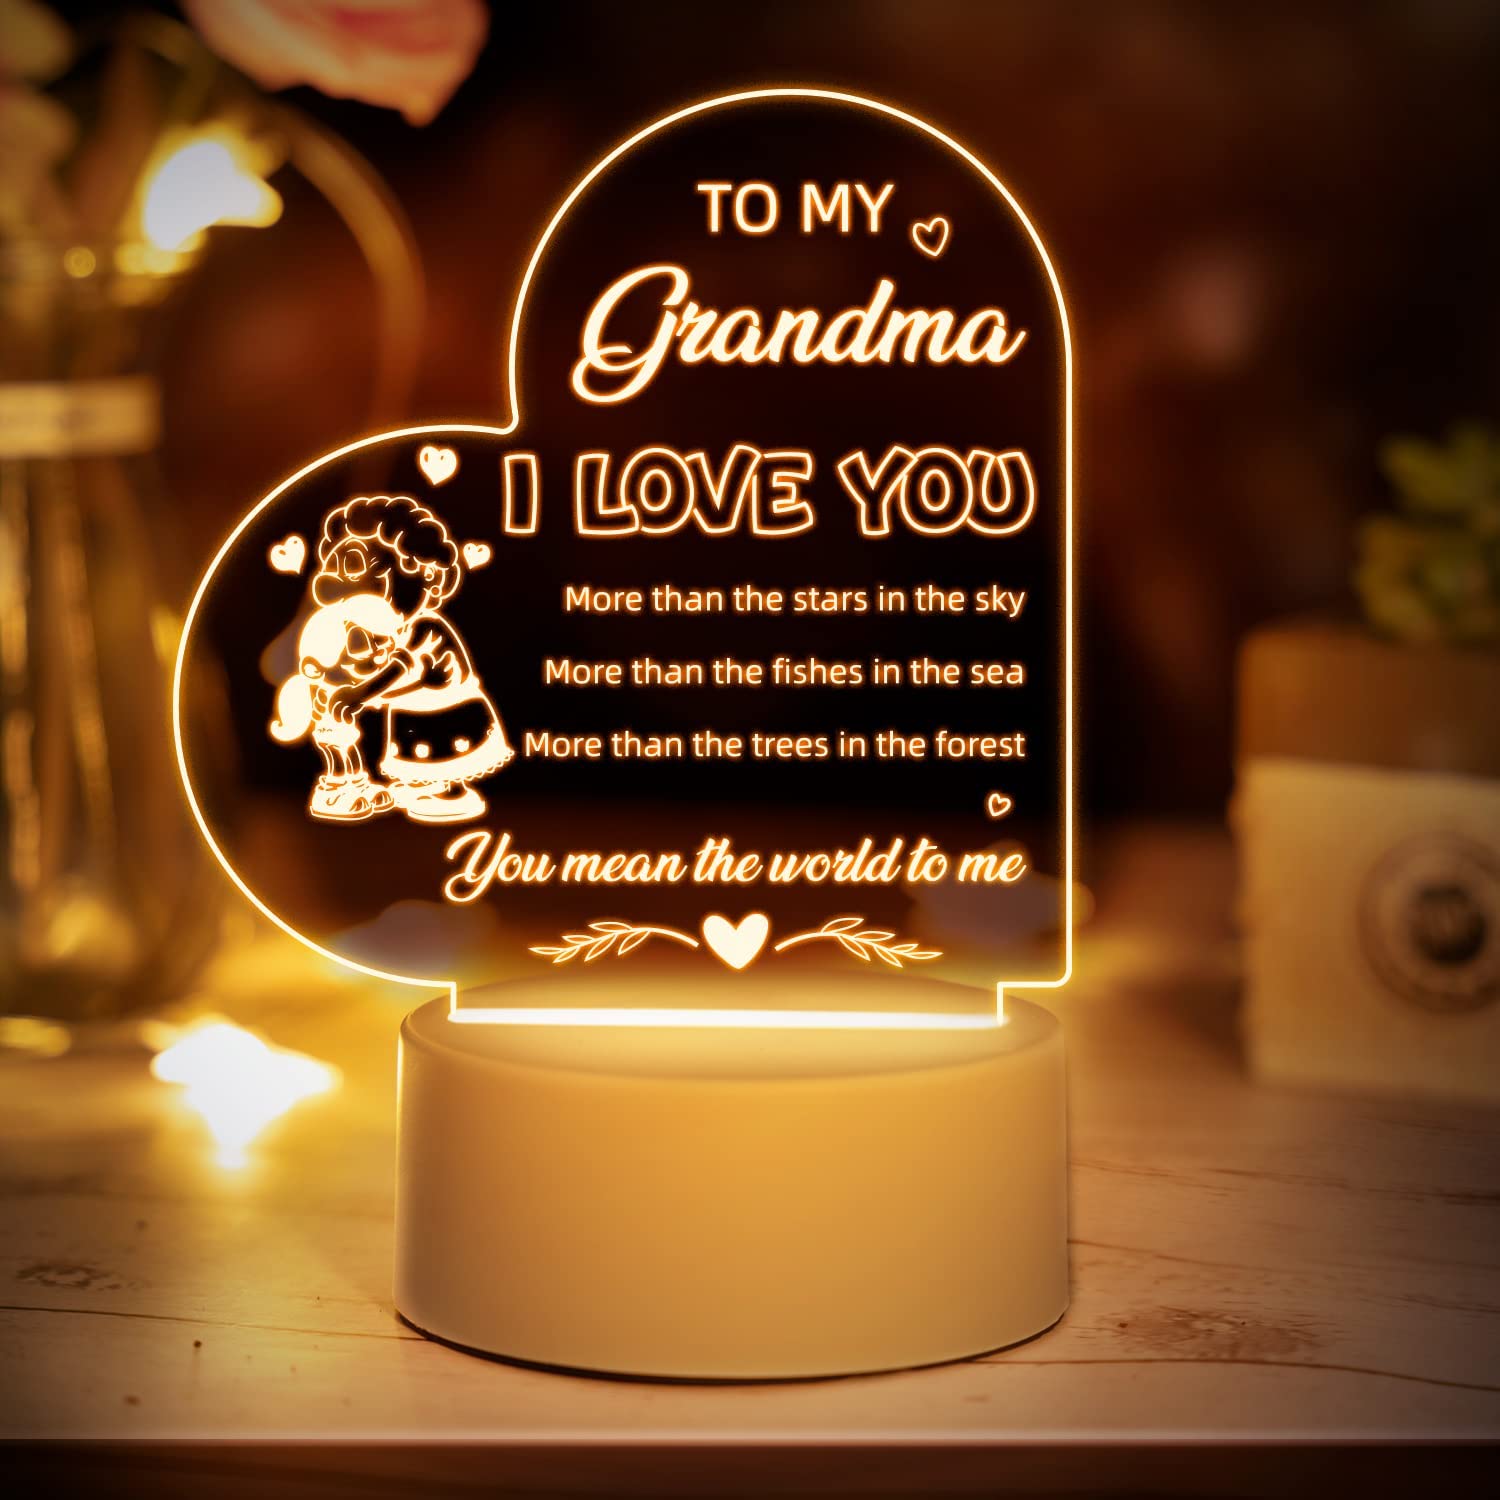 Regalos para abuela: el regalo perfecto para abuela, nana, abuela o abuela.  Ideal para el día de la madre, Navidad o cualquier ocasión especial. El  mejor regalo de cumpleaños de abuela y